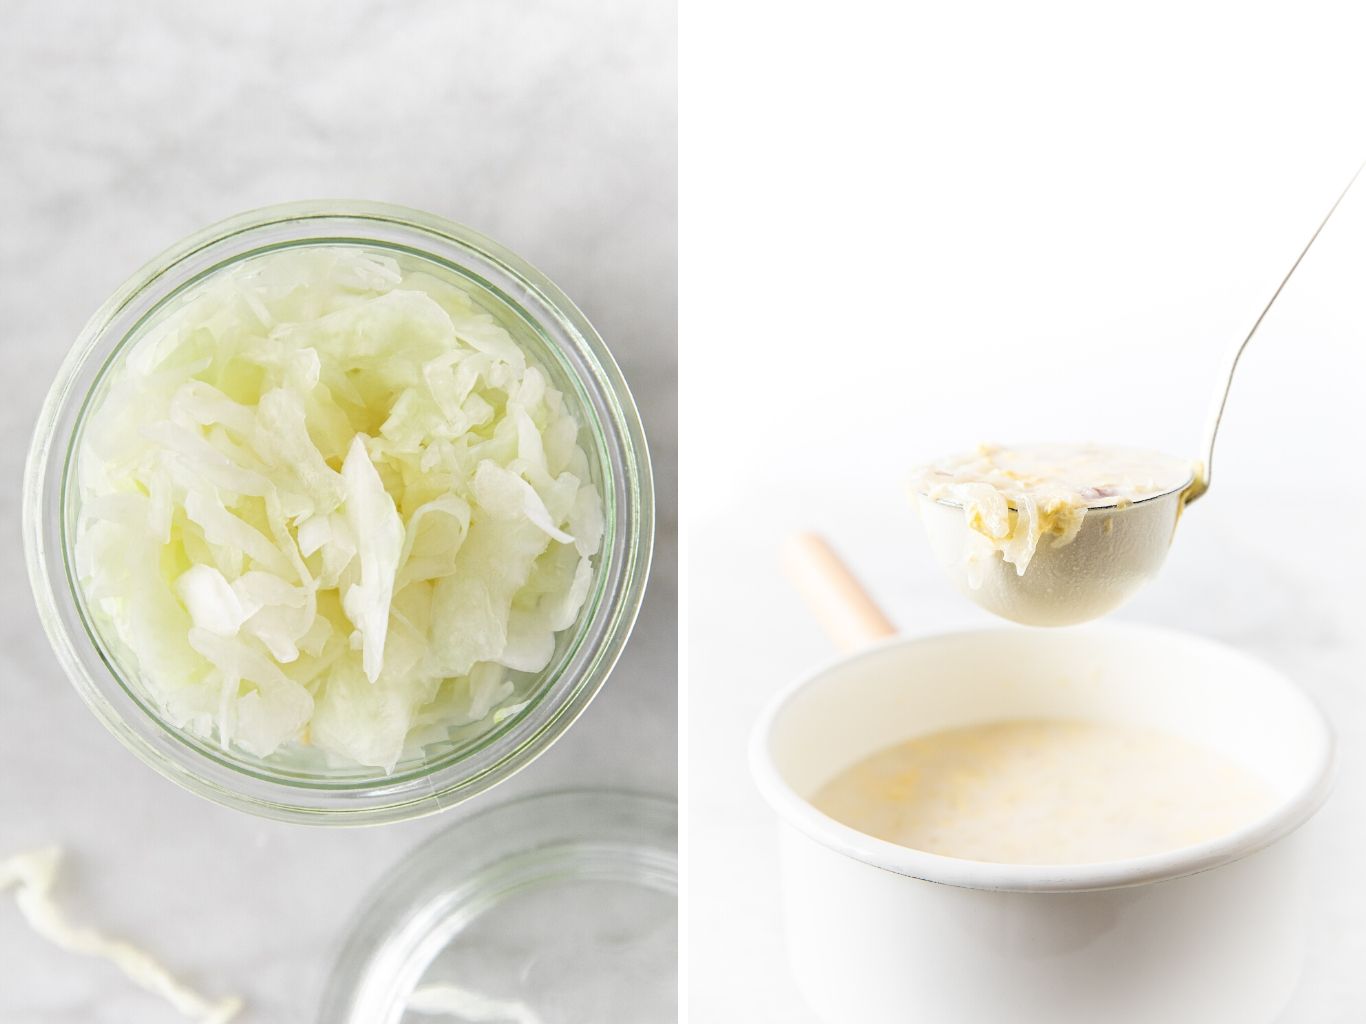 two photos showing sauerkraut and sauerkraut soup